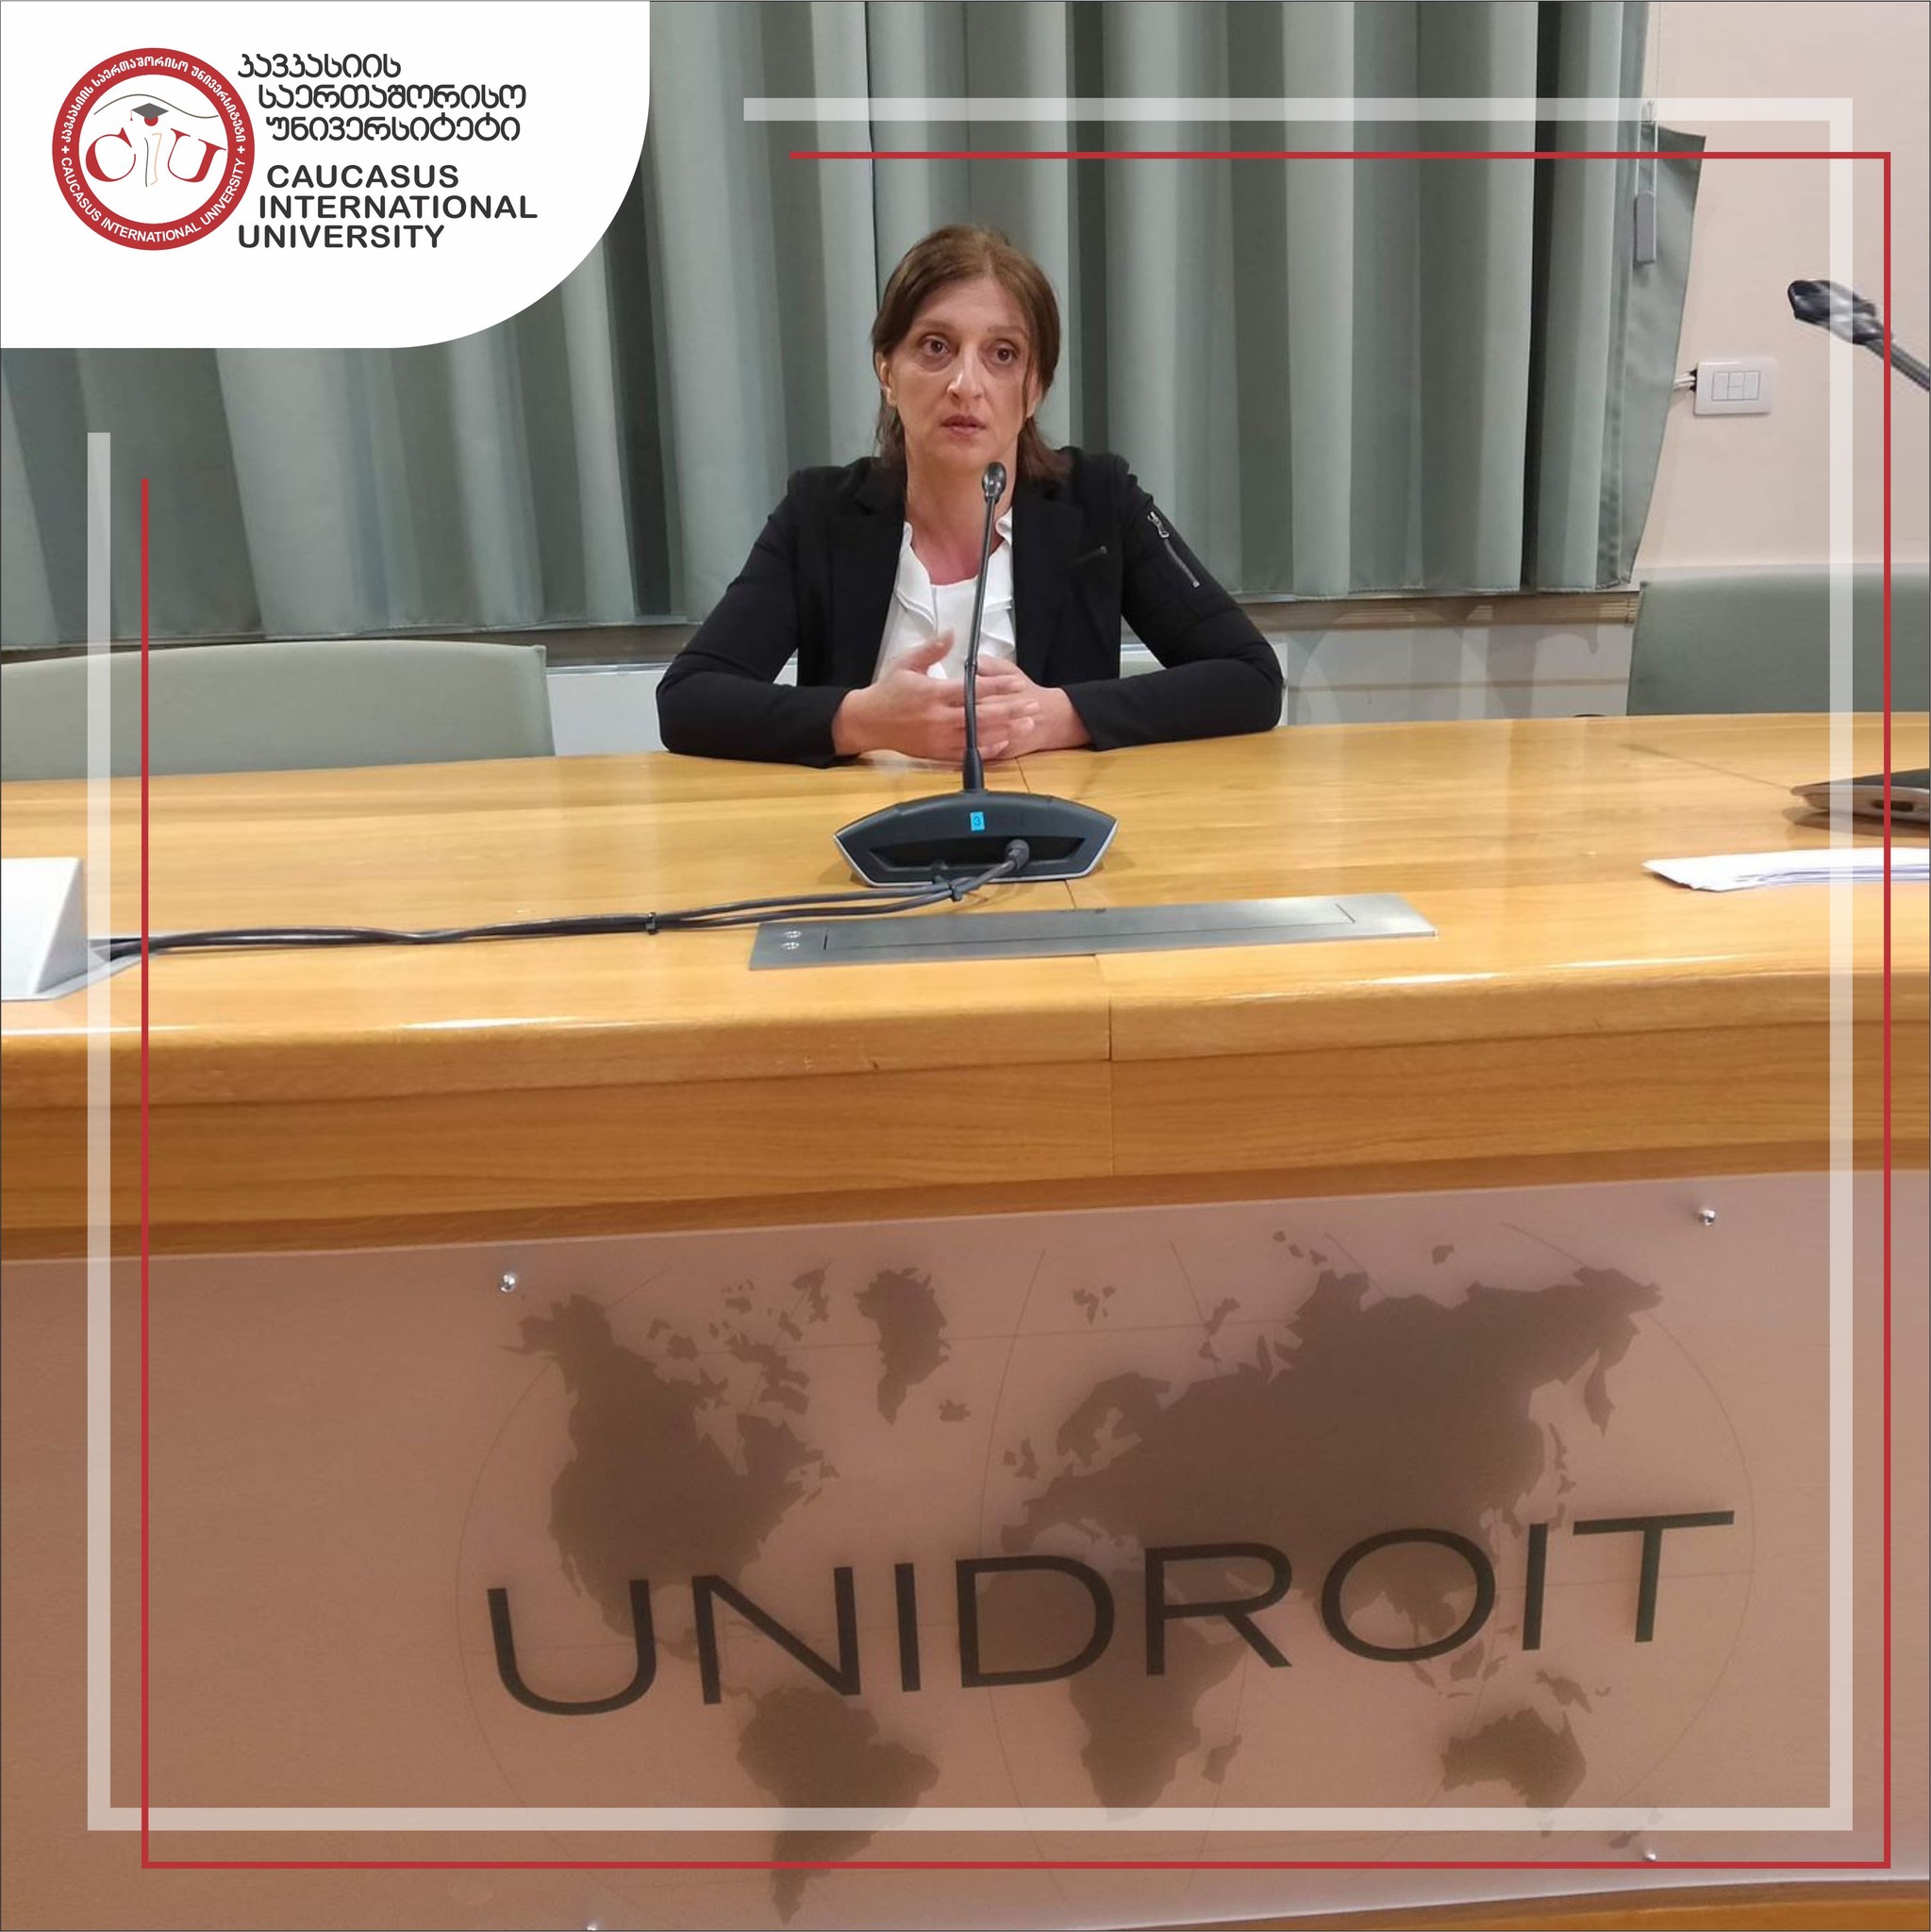 ნინო ხარიტონაშვილი სამუშაო ვიზიტის ფარგლებში, კერძო სამართლის უნიფიკაციის საერთაშორისო ინსტიტუტს -UNIDROIT-ს ესტუმრა